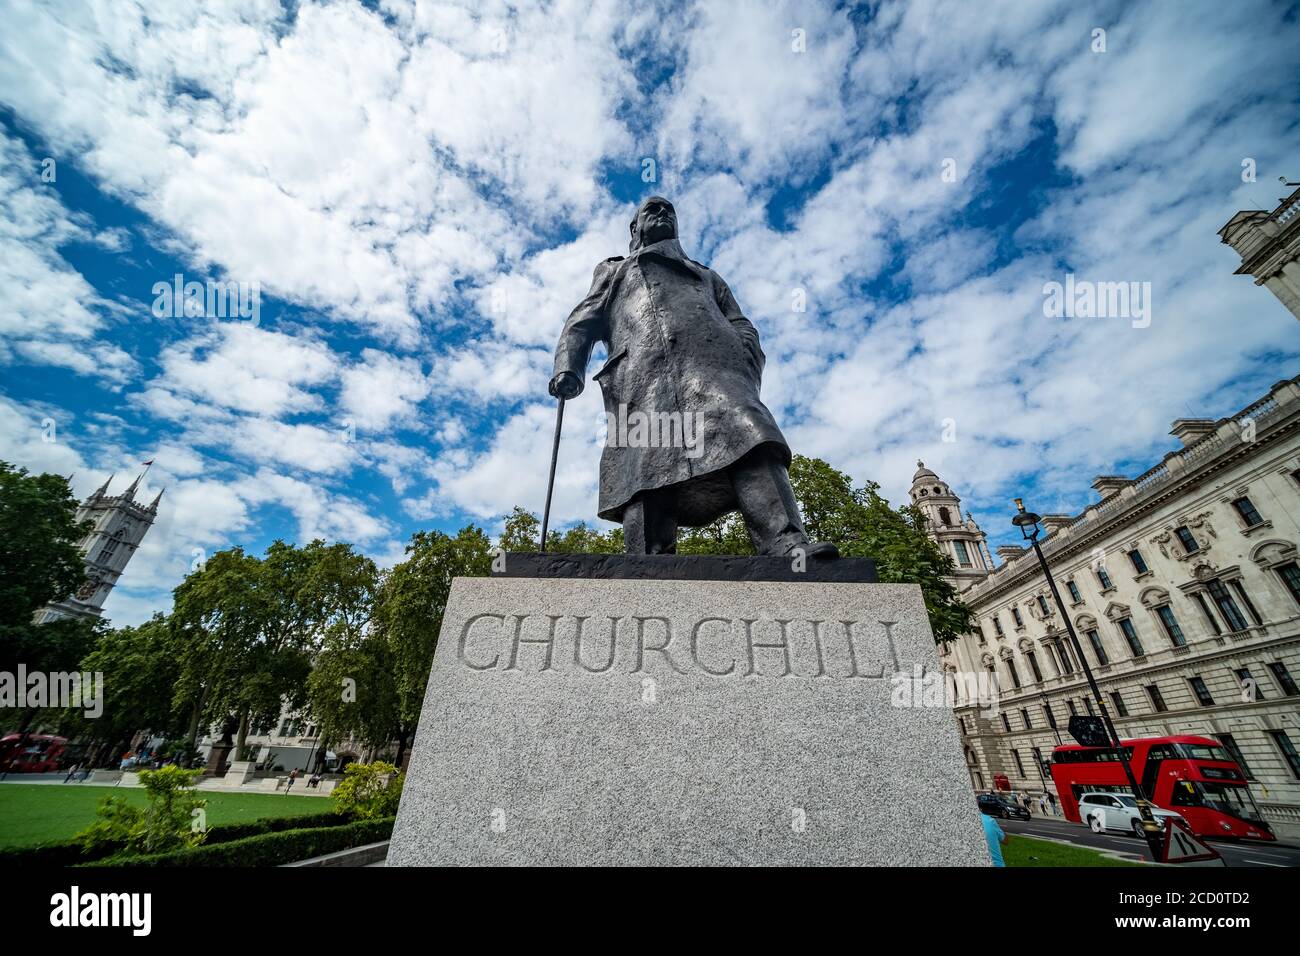 London - Winston Churchill Statue - prominenter britischer Premierminister des 2. Weltkrieges - auf dem Parlament Platz in Westminster Stockfoto